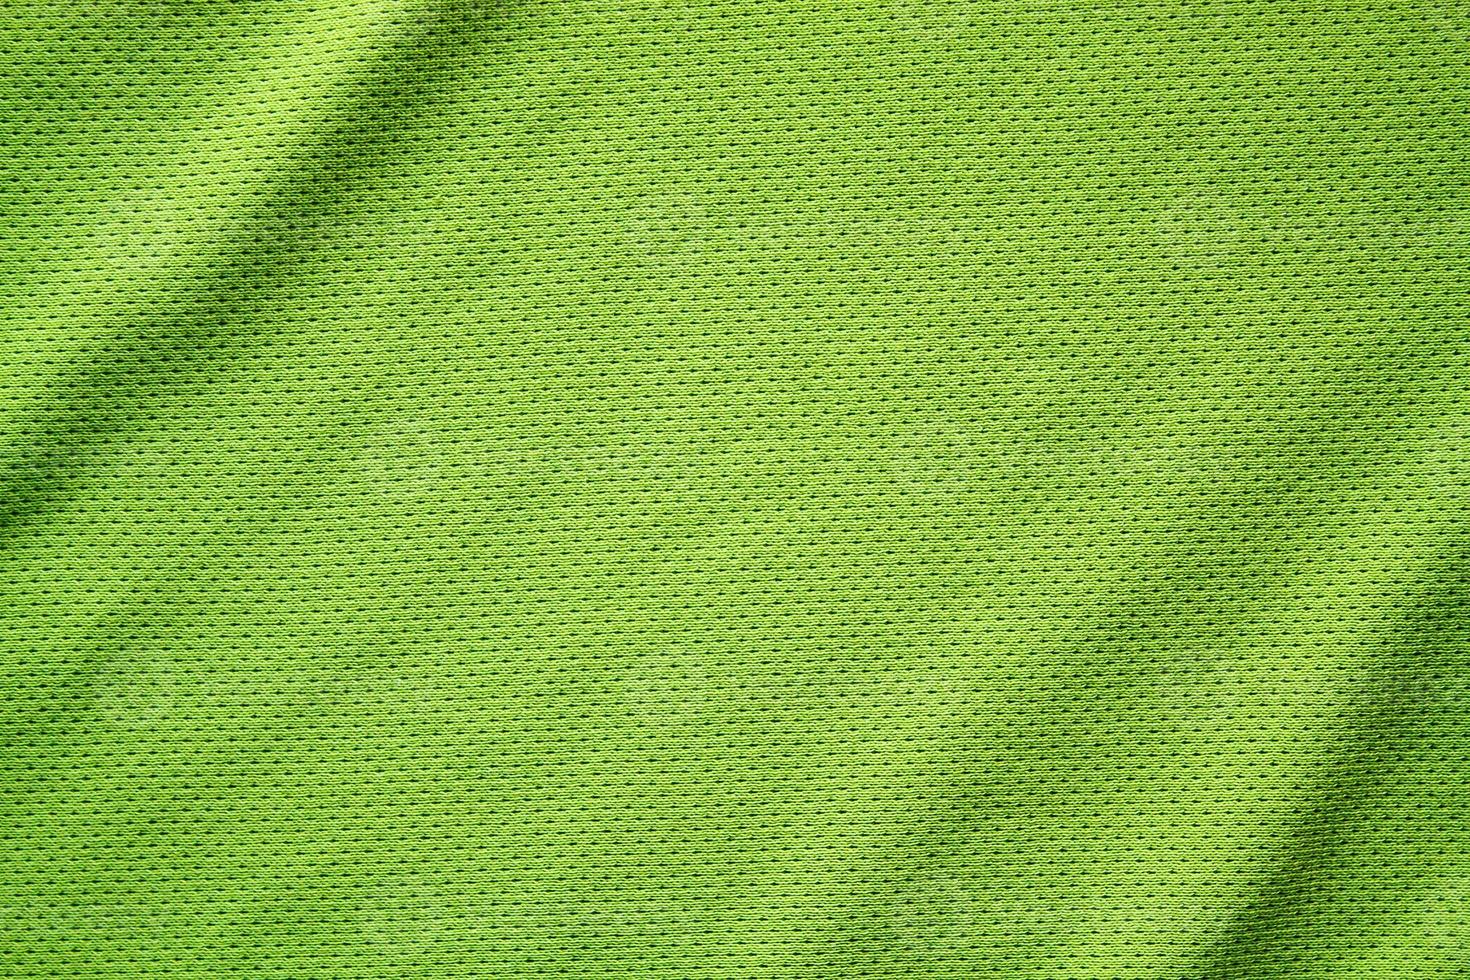 Fondo de textura de tela de ropa deportiva, vista superior de la superficie  textil de tela 6818600 Foto de stock en Vecteezy